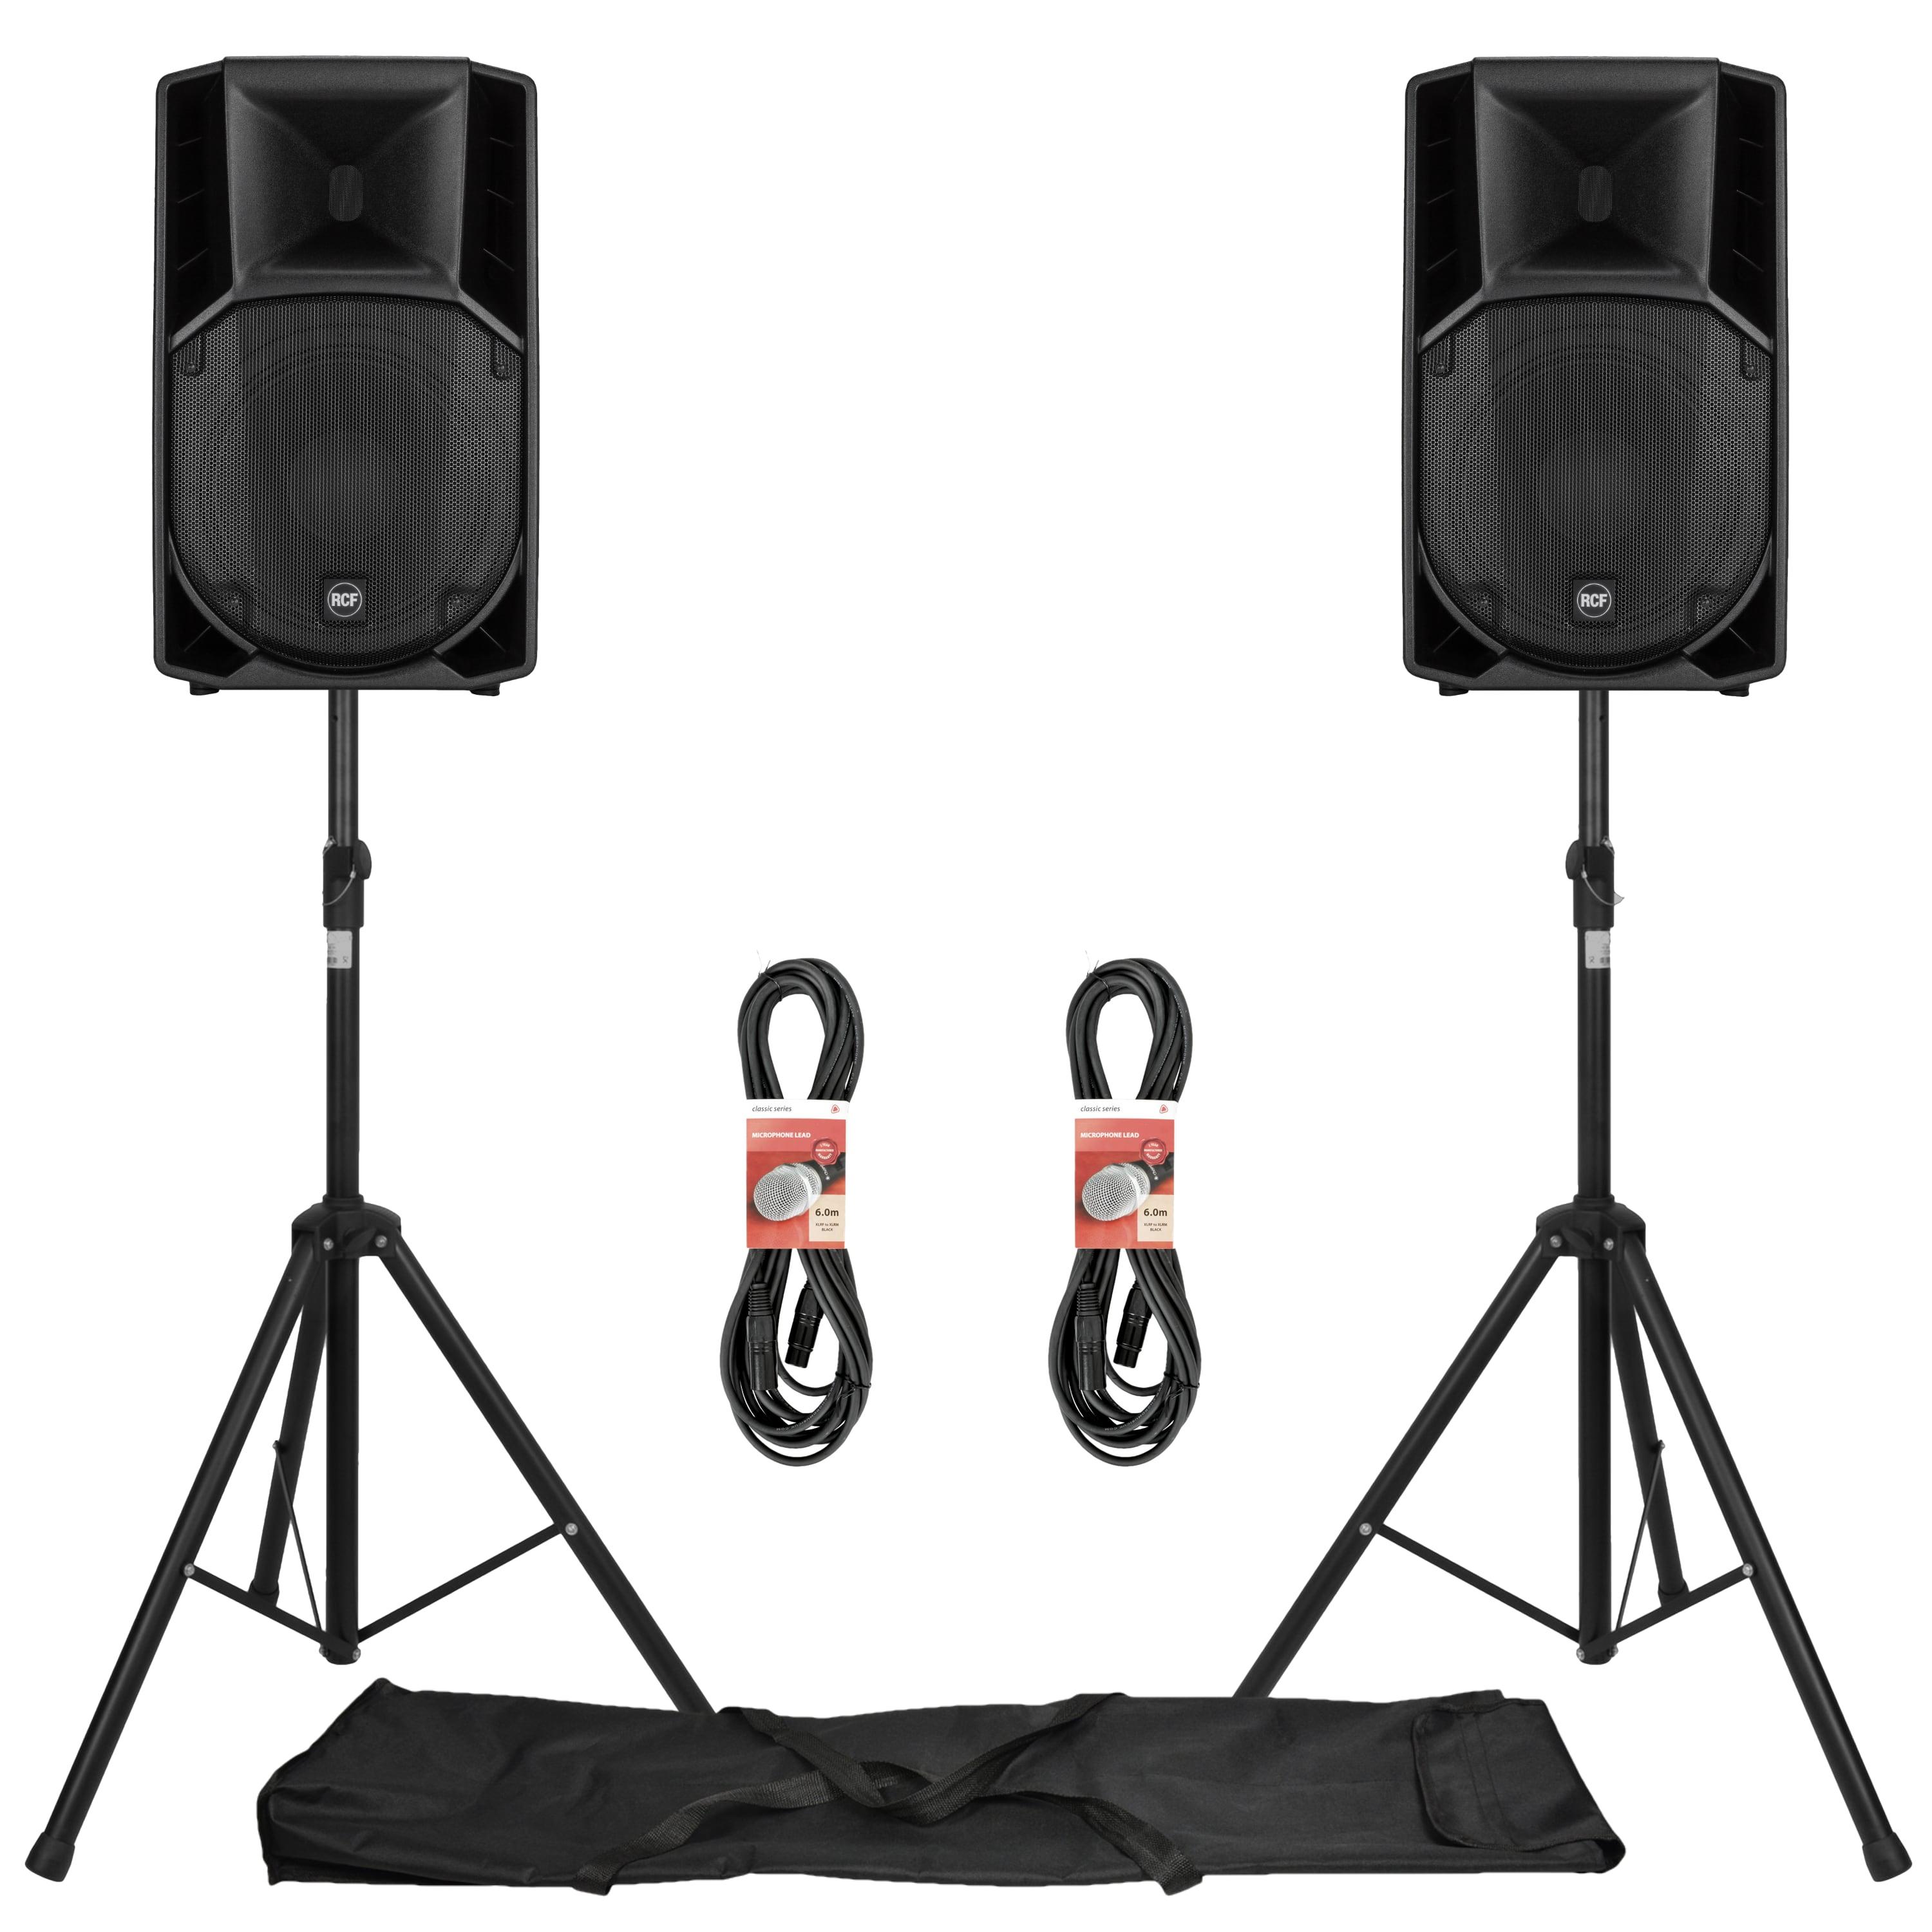 ART 712-A MK4 Active Speaker System